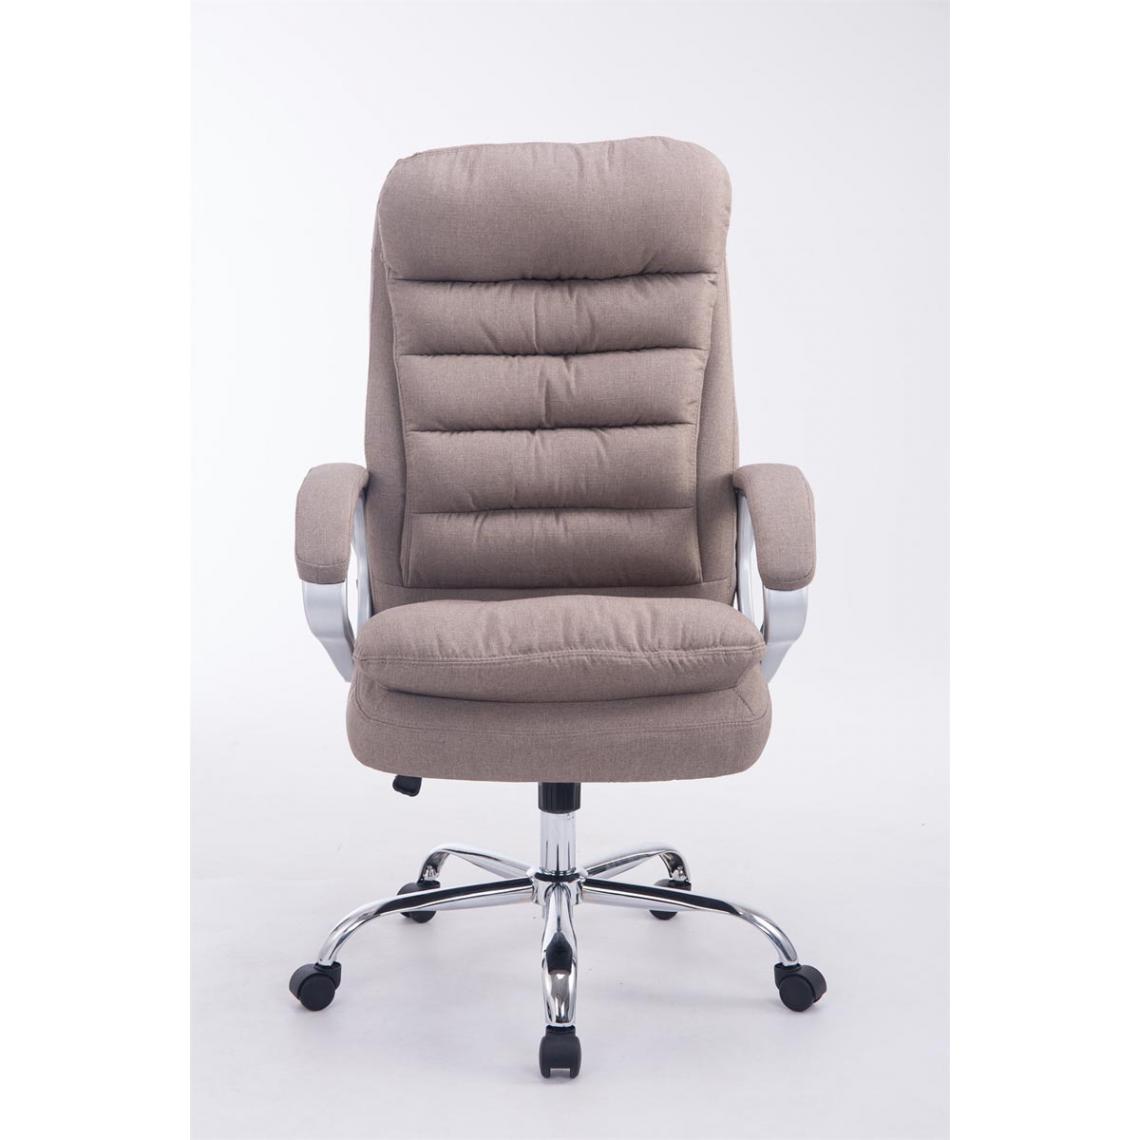 Icaverne - Esthetique Chaise de bureau famille Budapest Vancouver tissu couleur taupe - Chaises